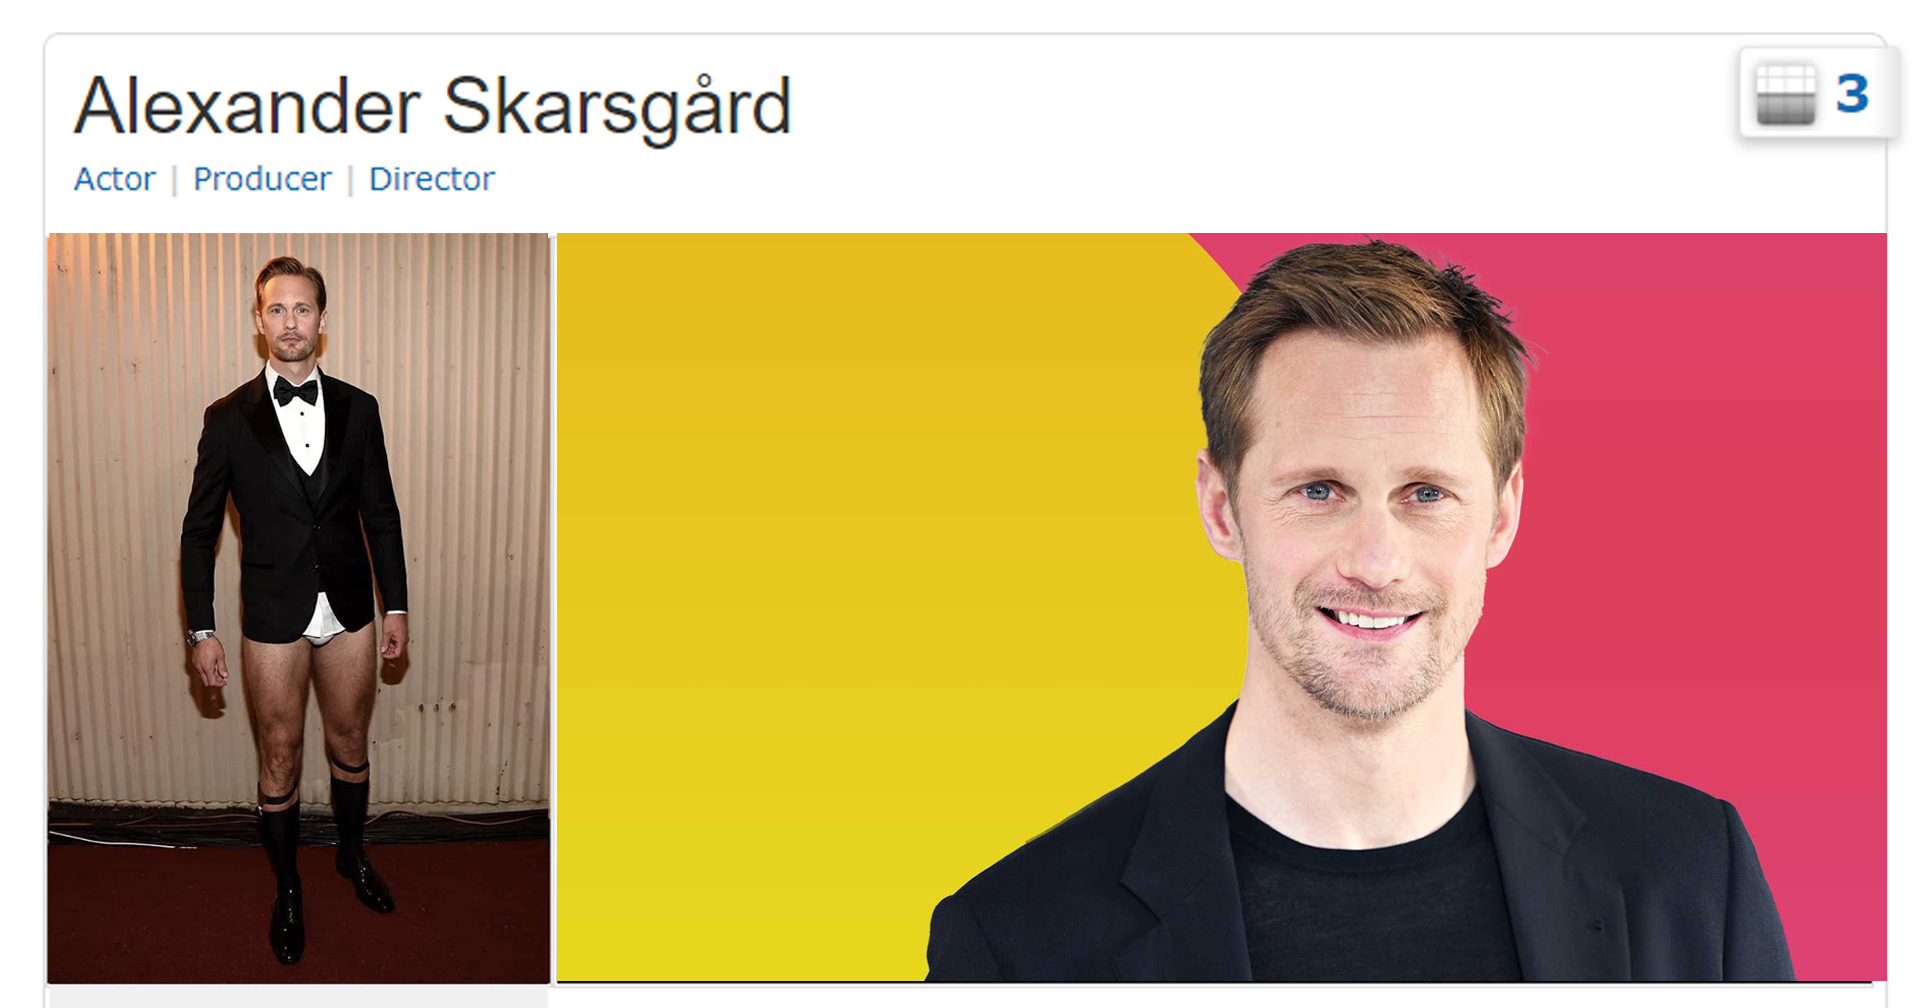 เบื้องหลังความปั่น Alexander Skarsgard ‘ผู้ใส่สูททับกางเกงใน’ ไปขึ้นรูปโปร์ไฟล์ IMDb